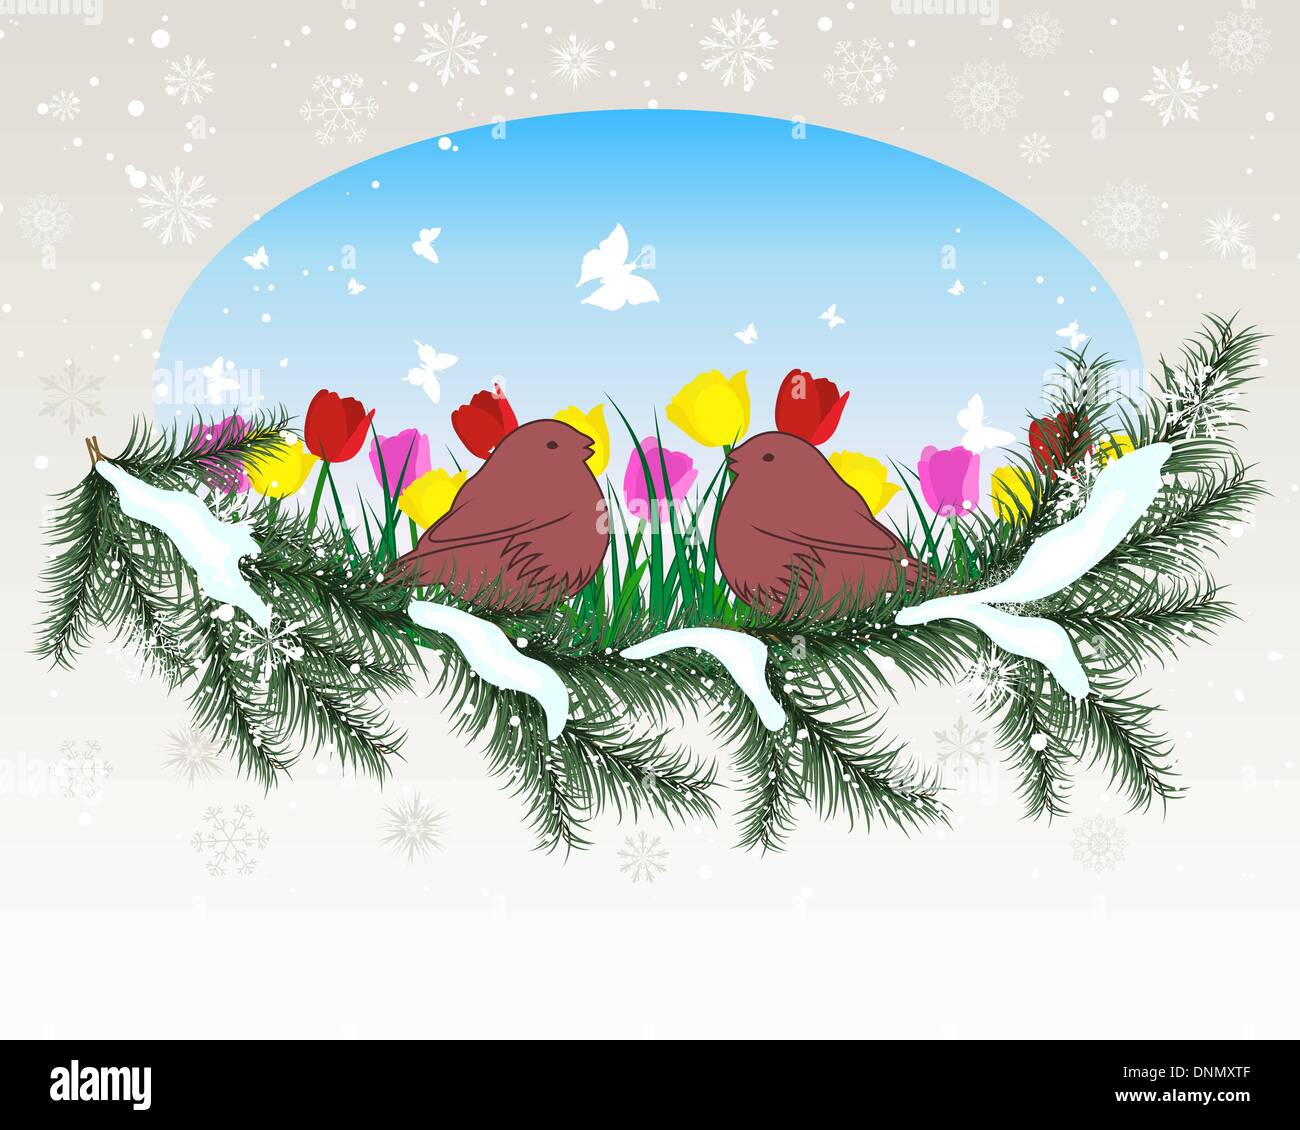 Winter Hintergrund mit ovalen Fenster und Grass Silhouetten-Hintergrund. Alle Objekte werden getrennt. Stock Vektor